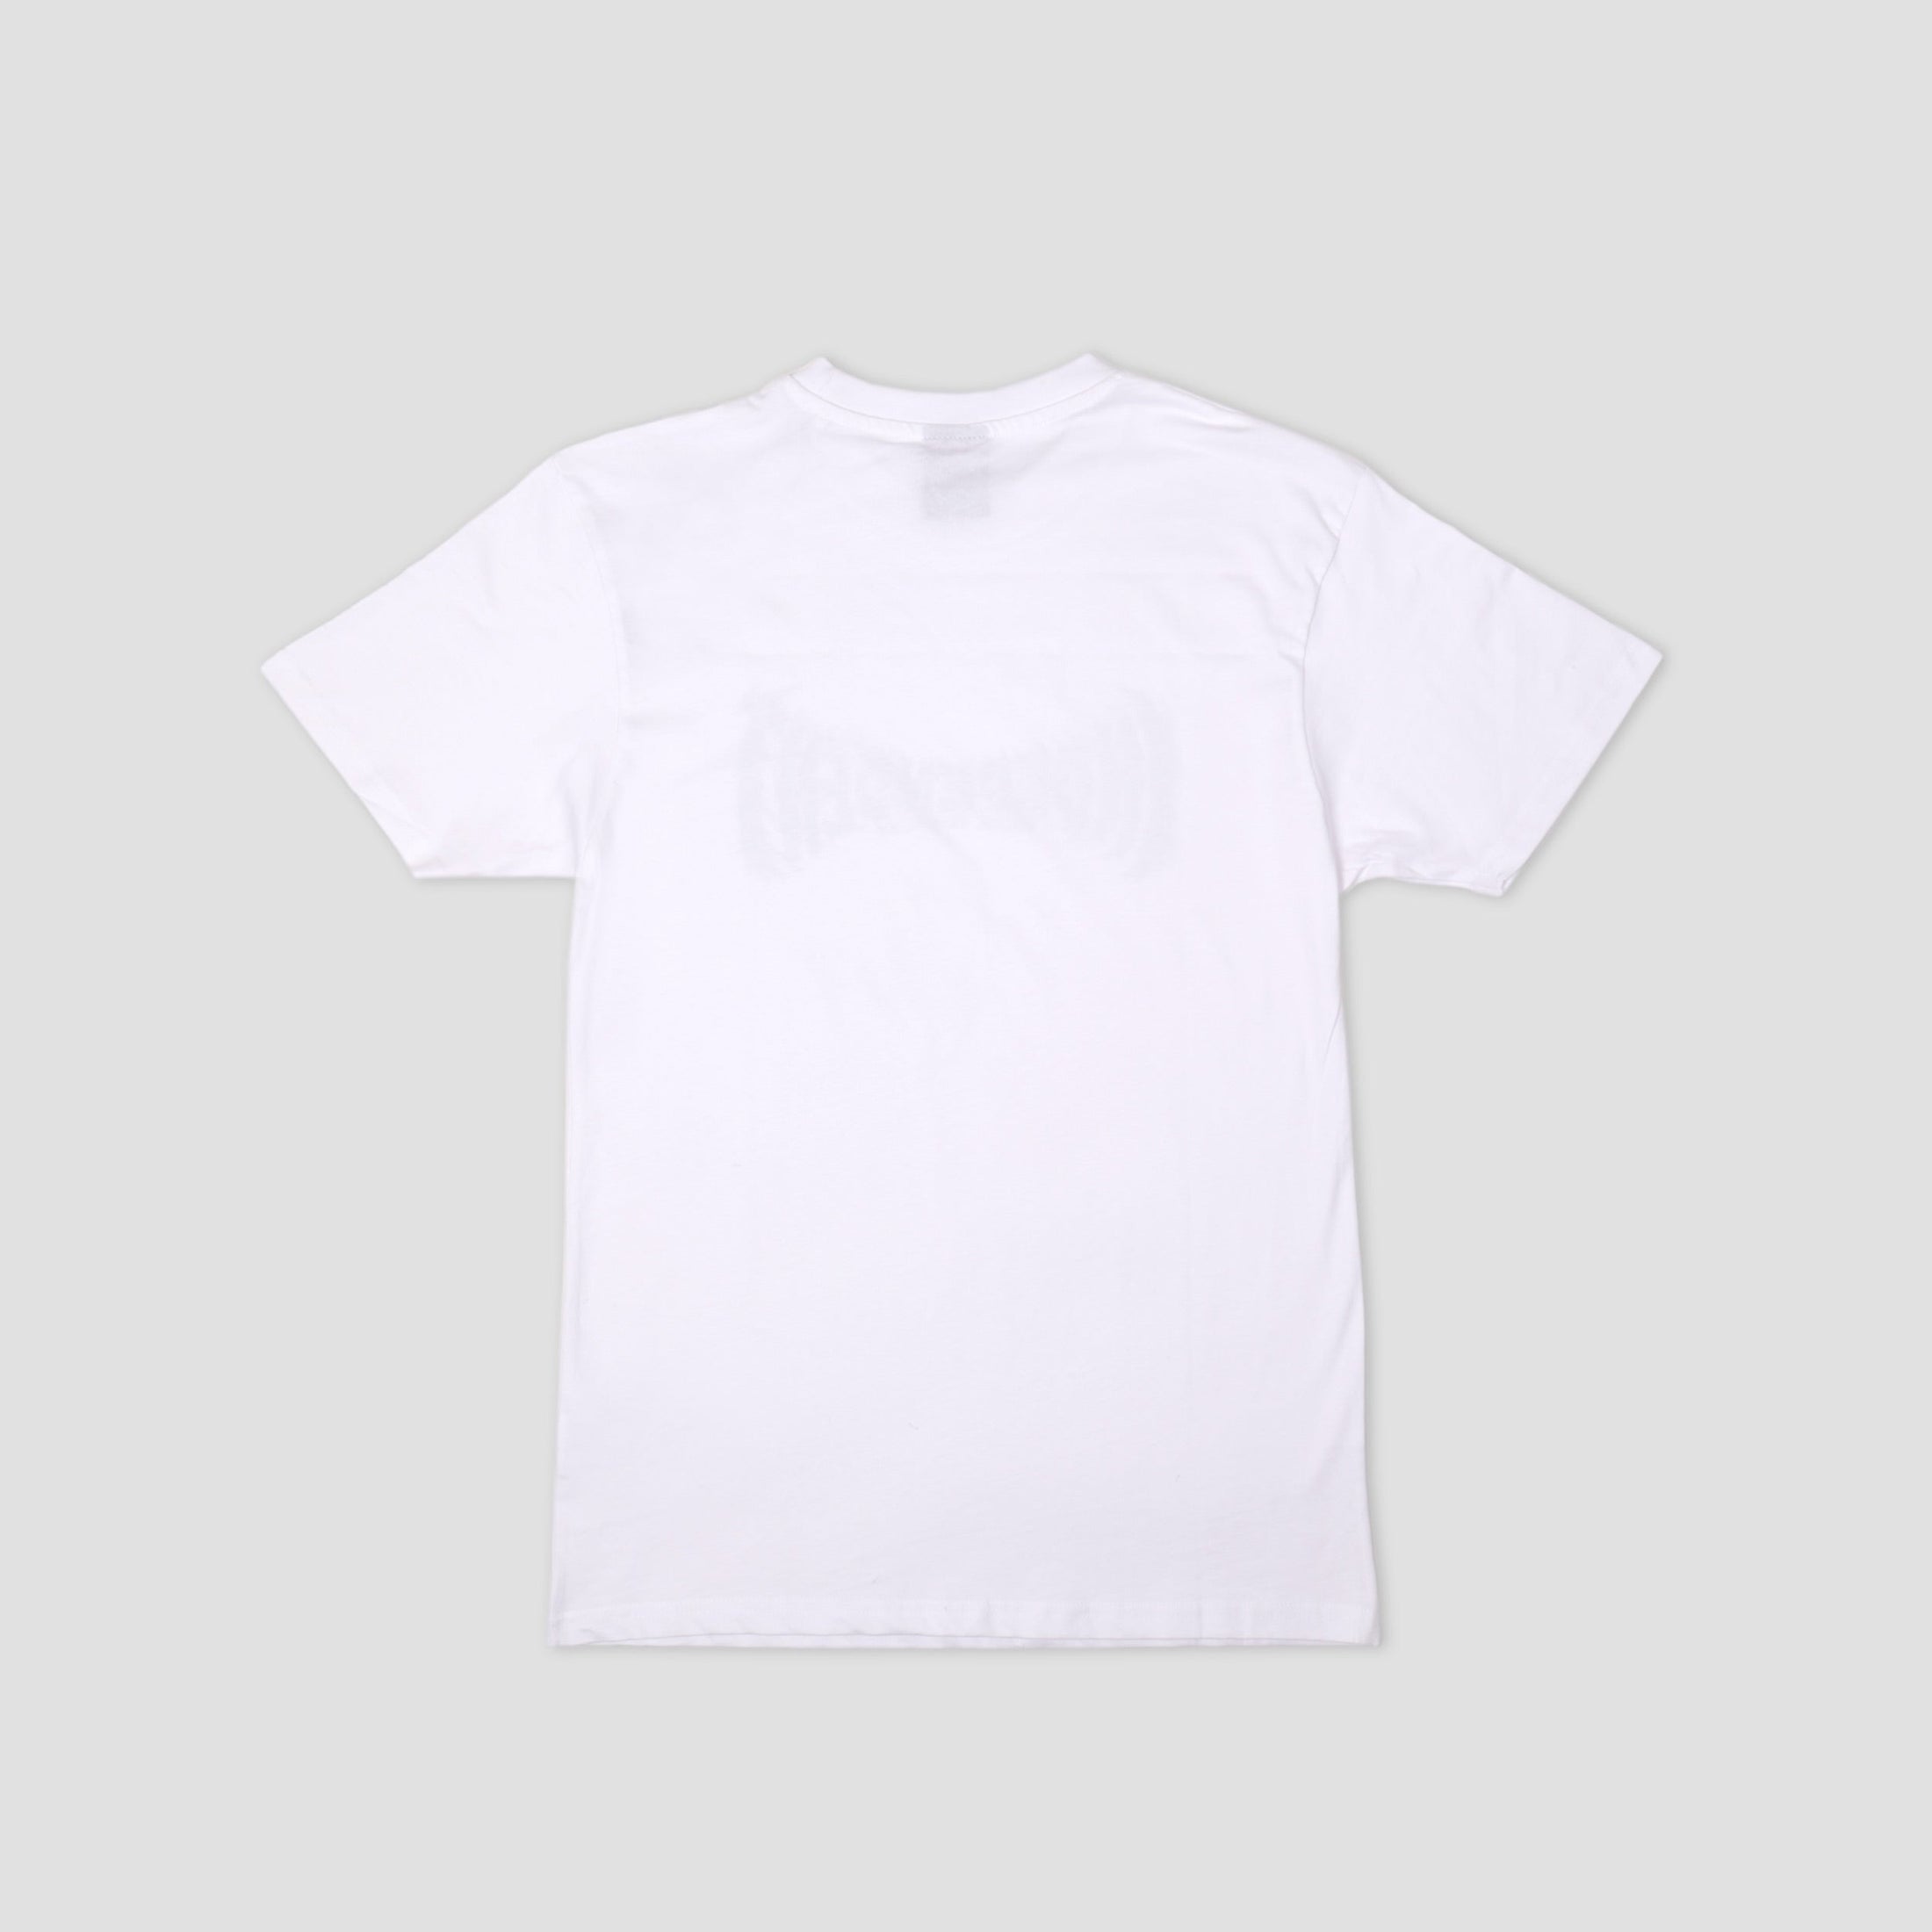 Independent Metal Span T-Shirt White